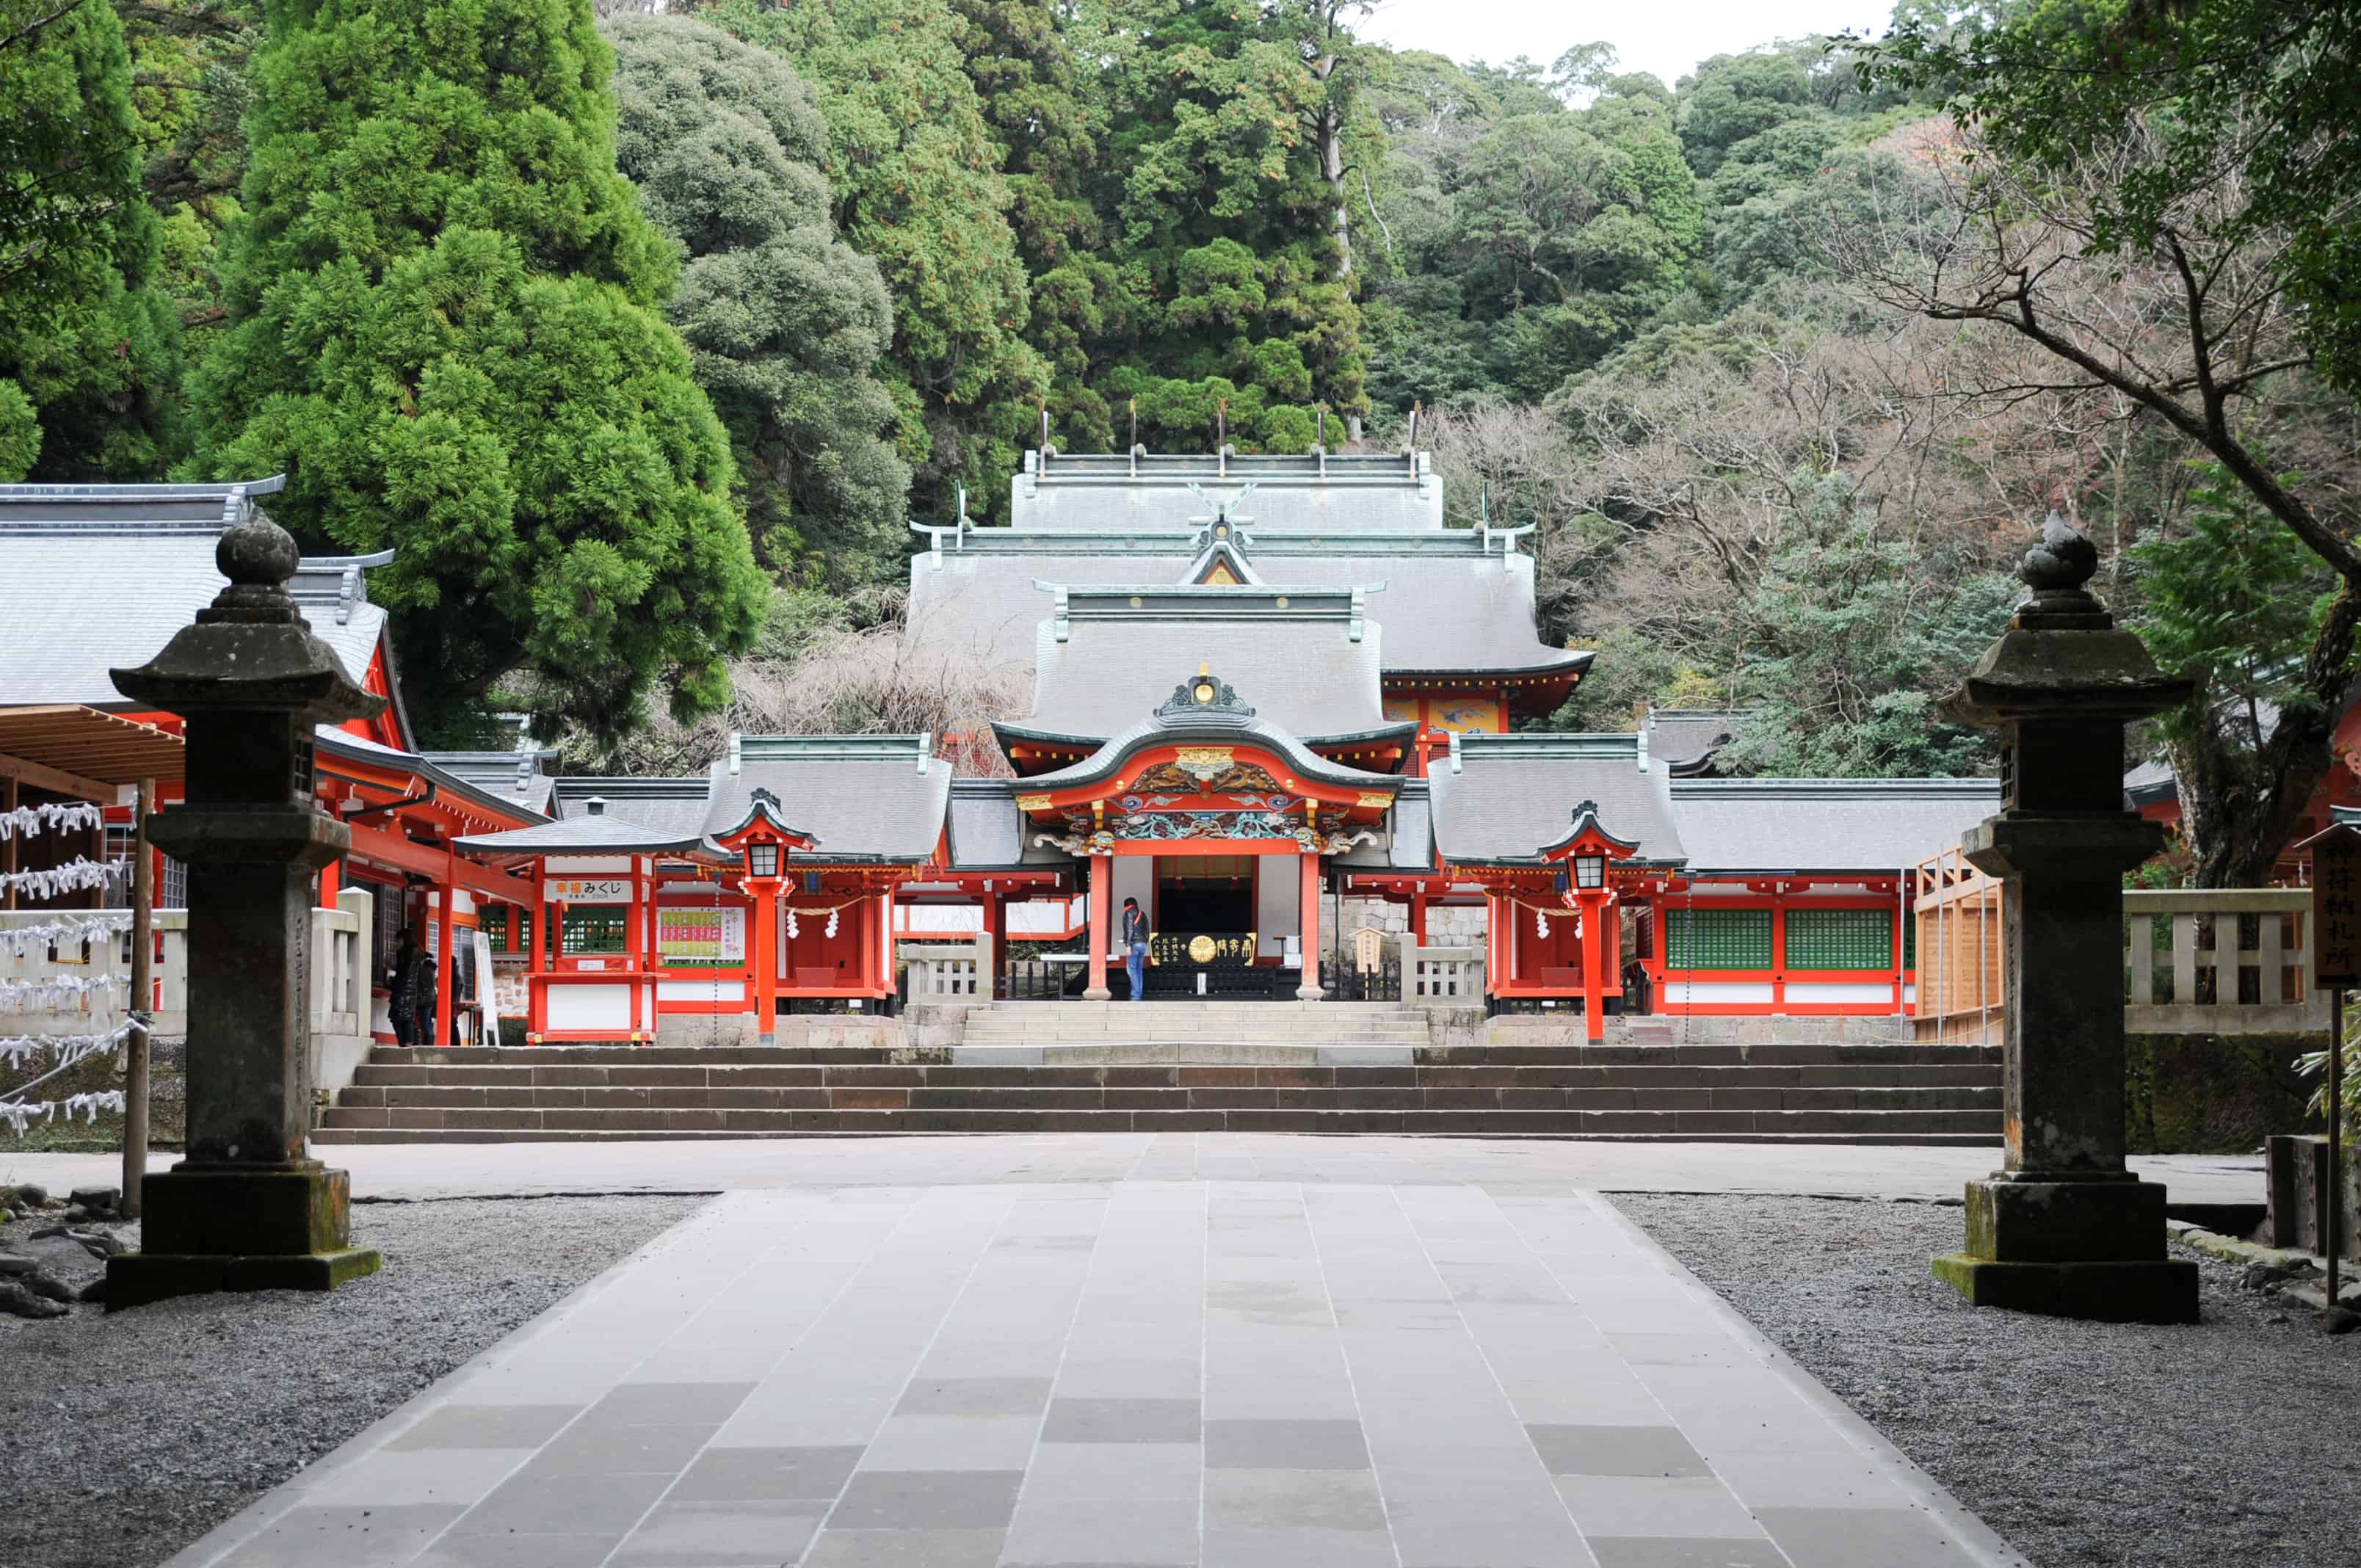 ที่ เที่ยว คาโกชิม่า (Kagoshima) - ศาลเจ้าคิริชิมะ (Kirishima Shrine)